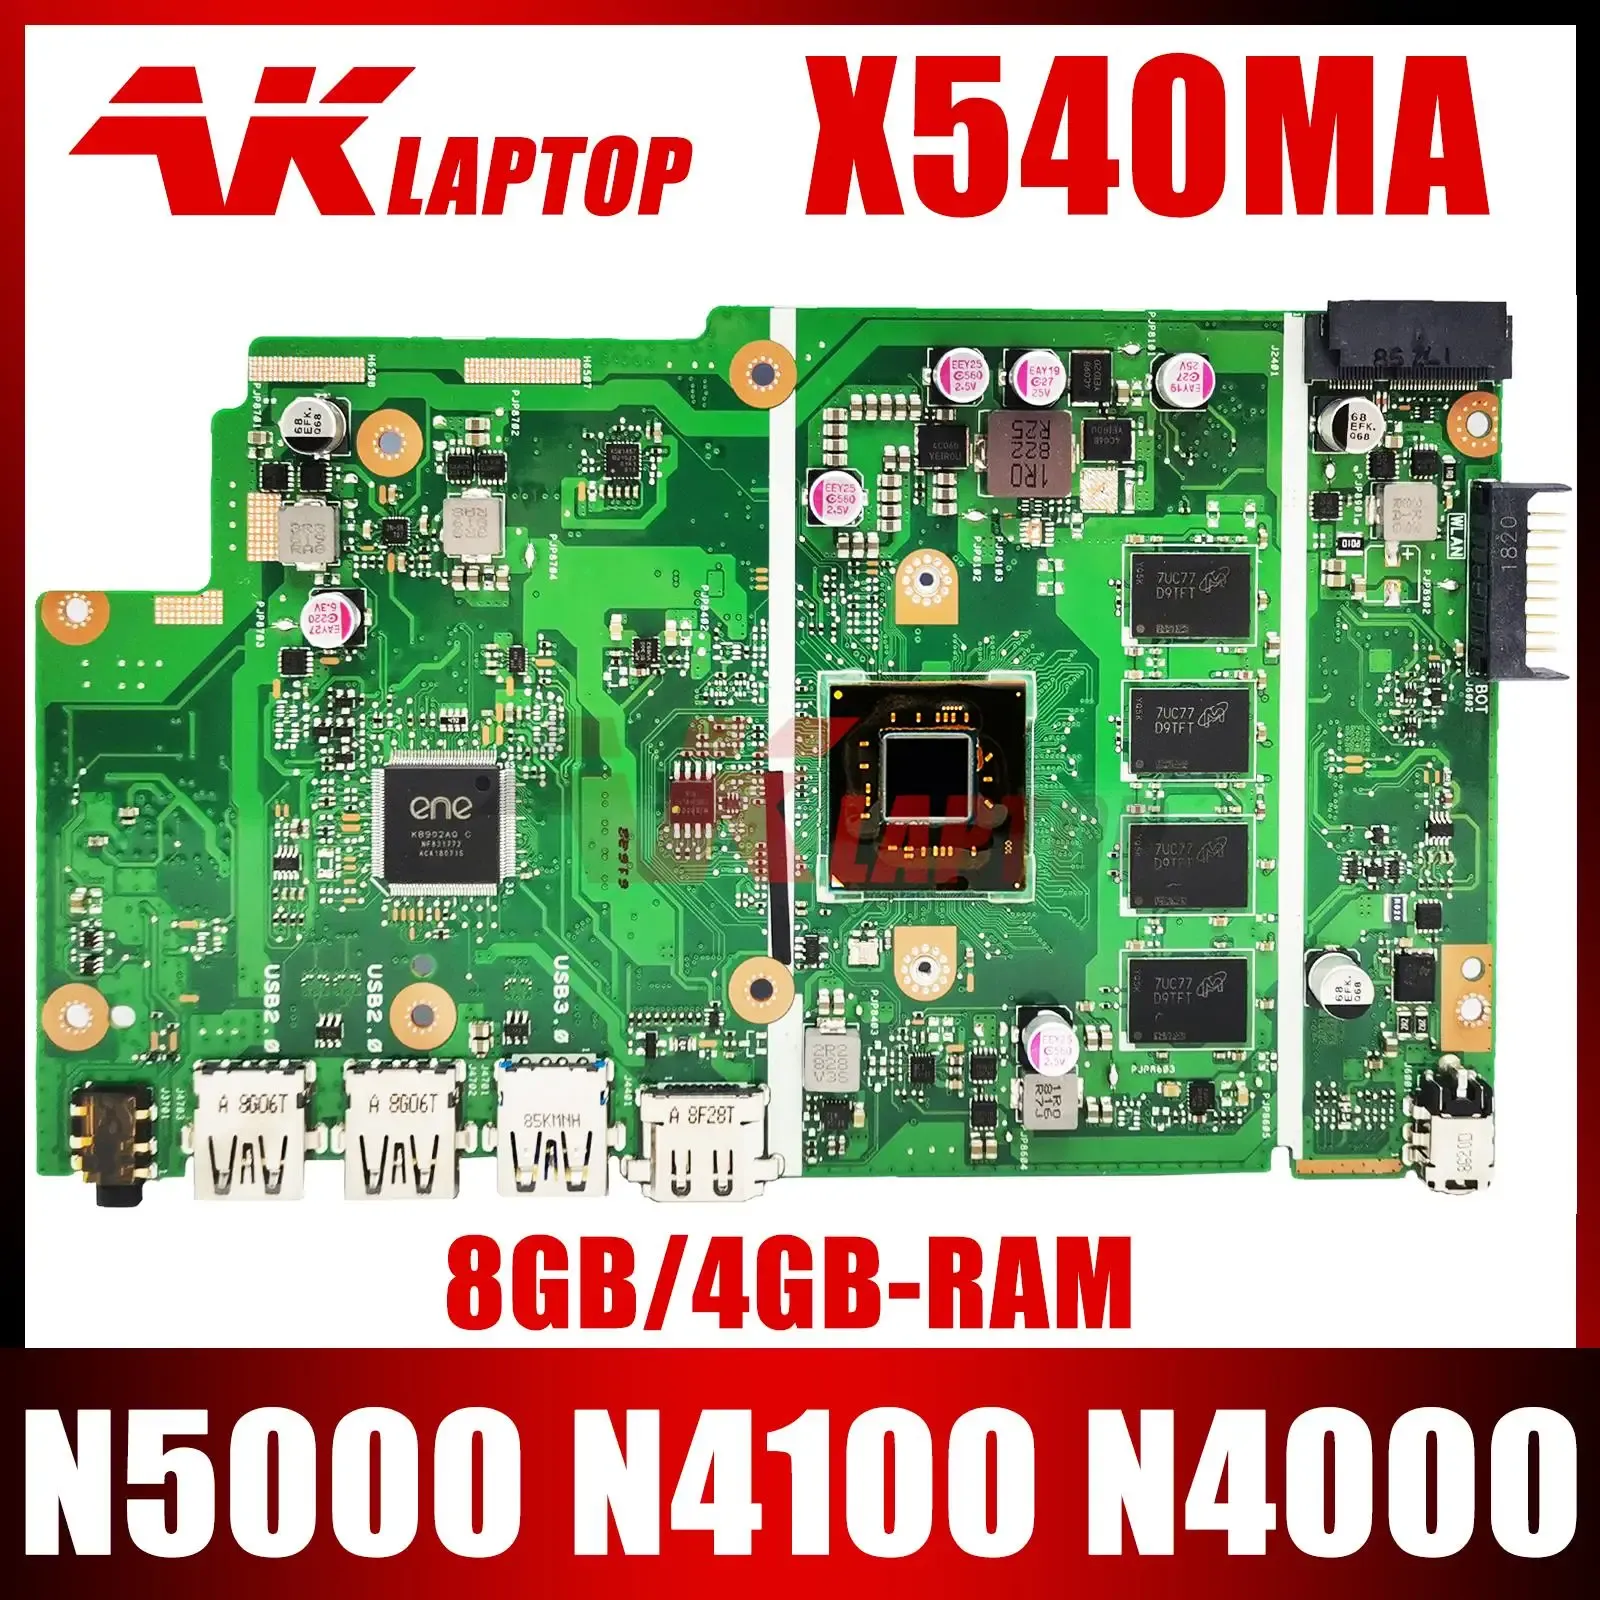 Moederbord X540MA Mainboard voor ASUS X540M A540M X540MA LAPTOP MOEDER BORD MET N4000 N4000 N4100 8GB 4GBRAM 100% TEST